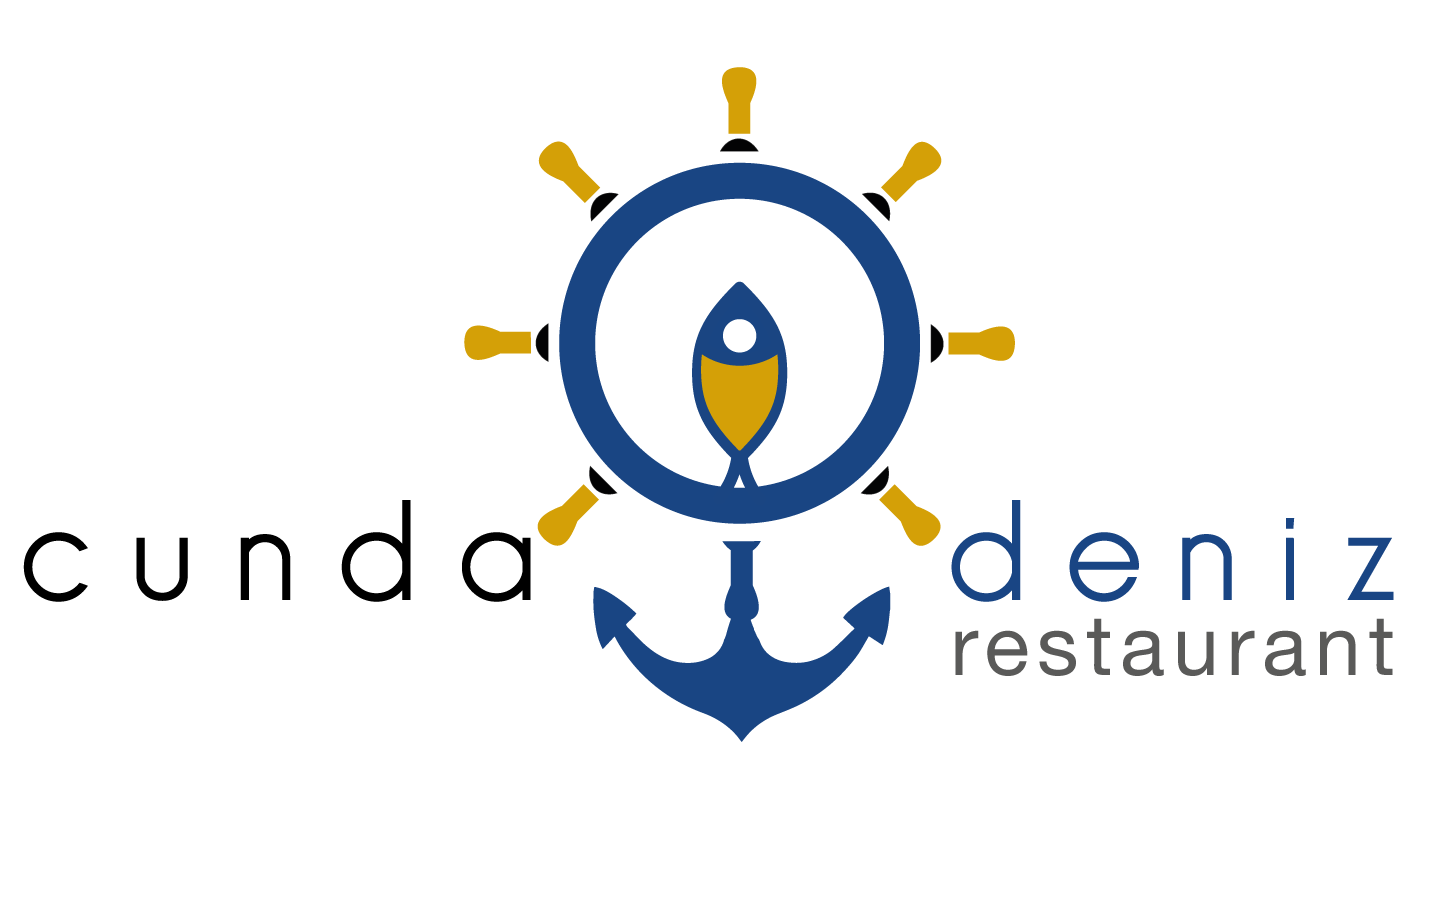 Cunda Deniz Restaurant | Cunda'nın Lezzet Noktası